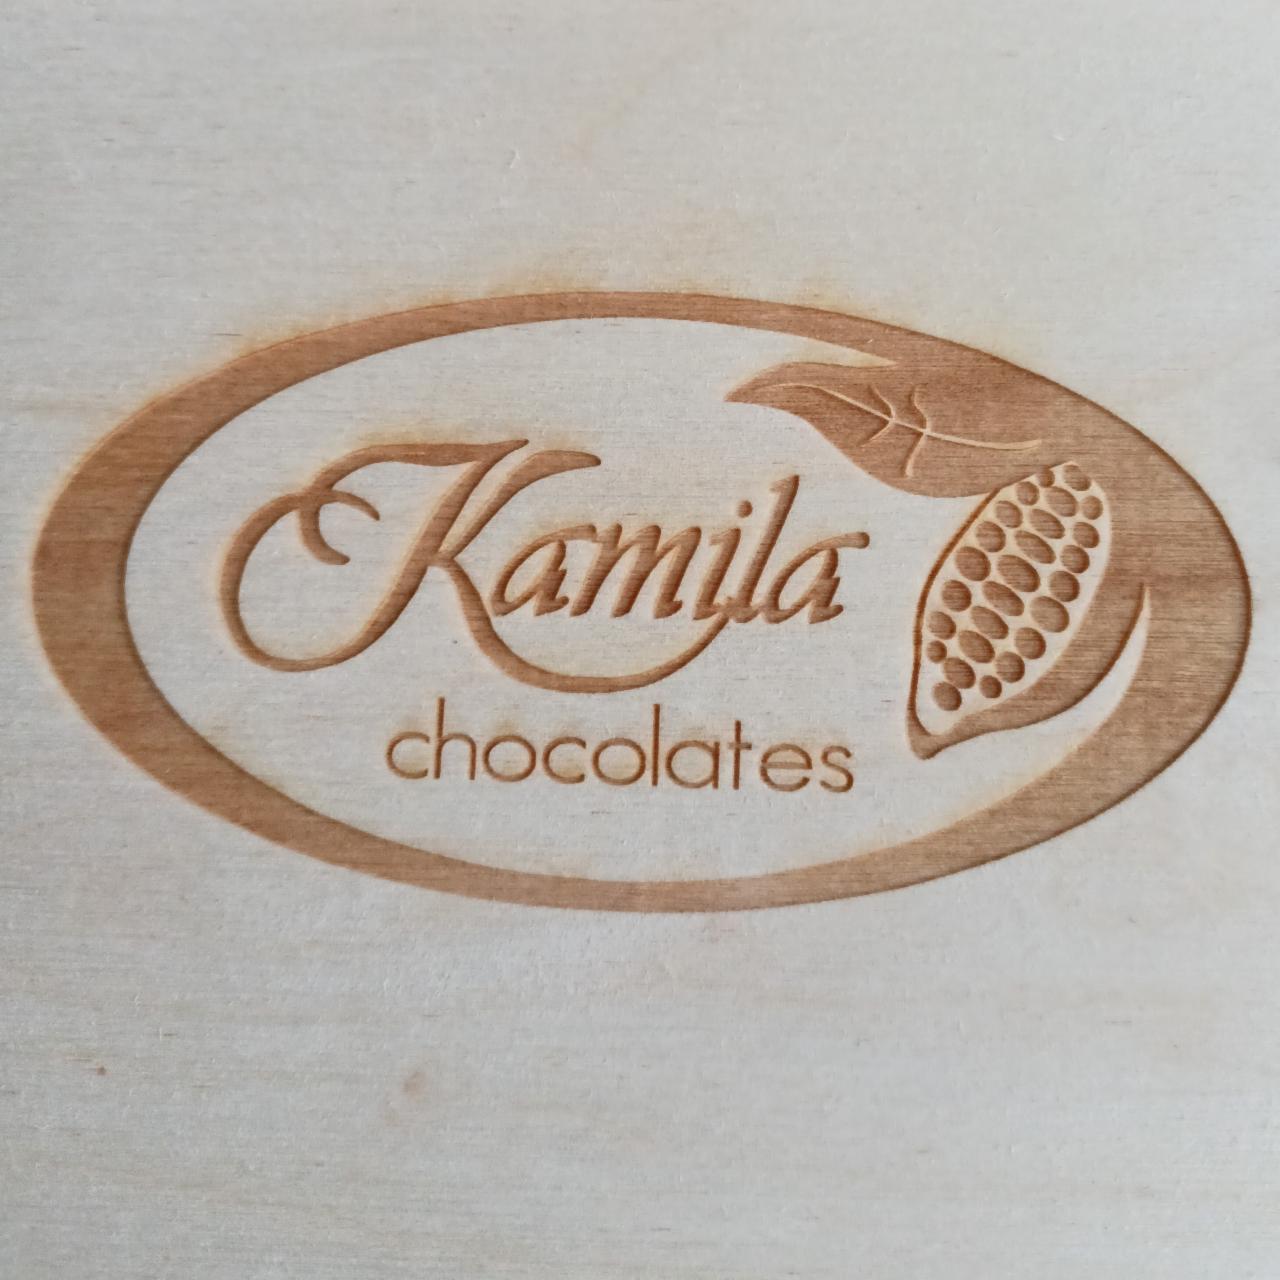 Fotografie - Kamila chocolates dřevěná krabička